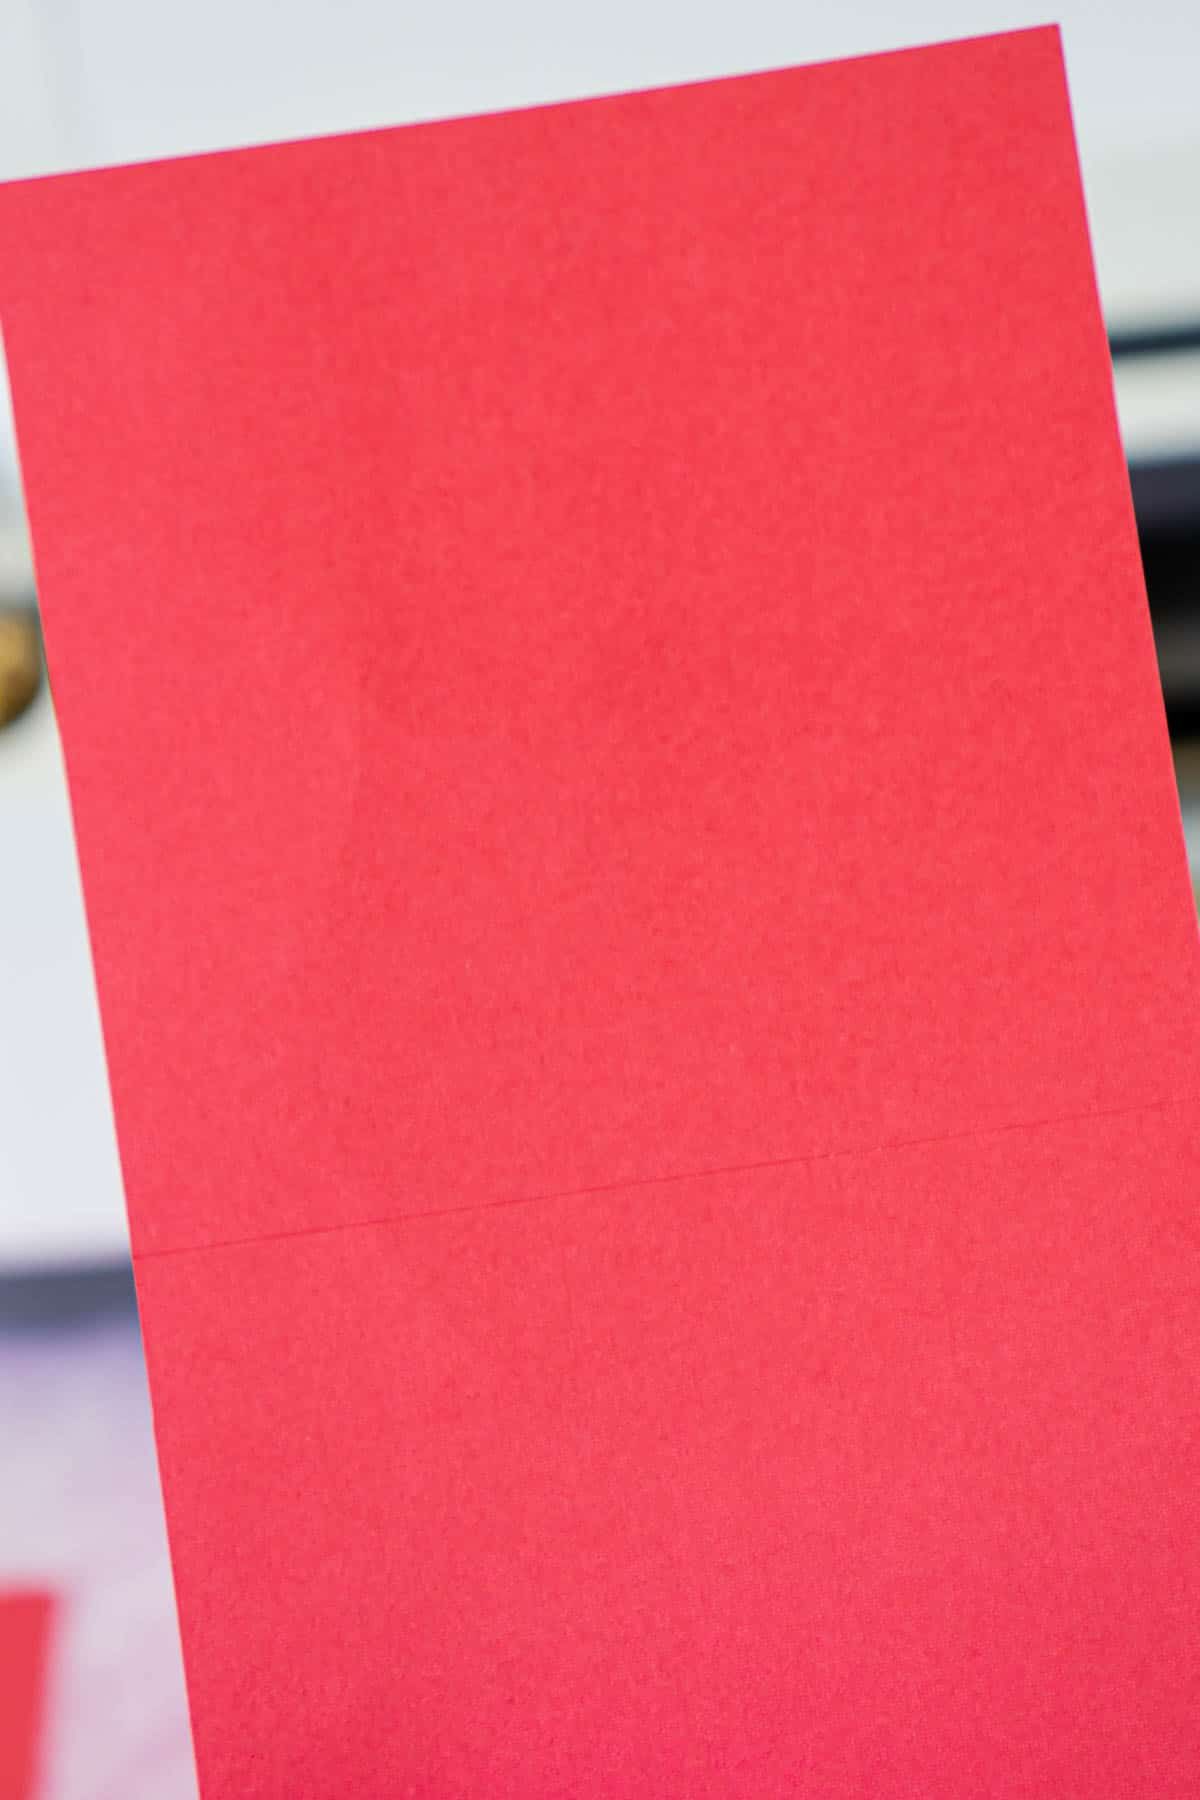 Pedazo de cartulina roja con líneas de puntuación